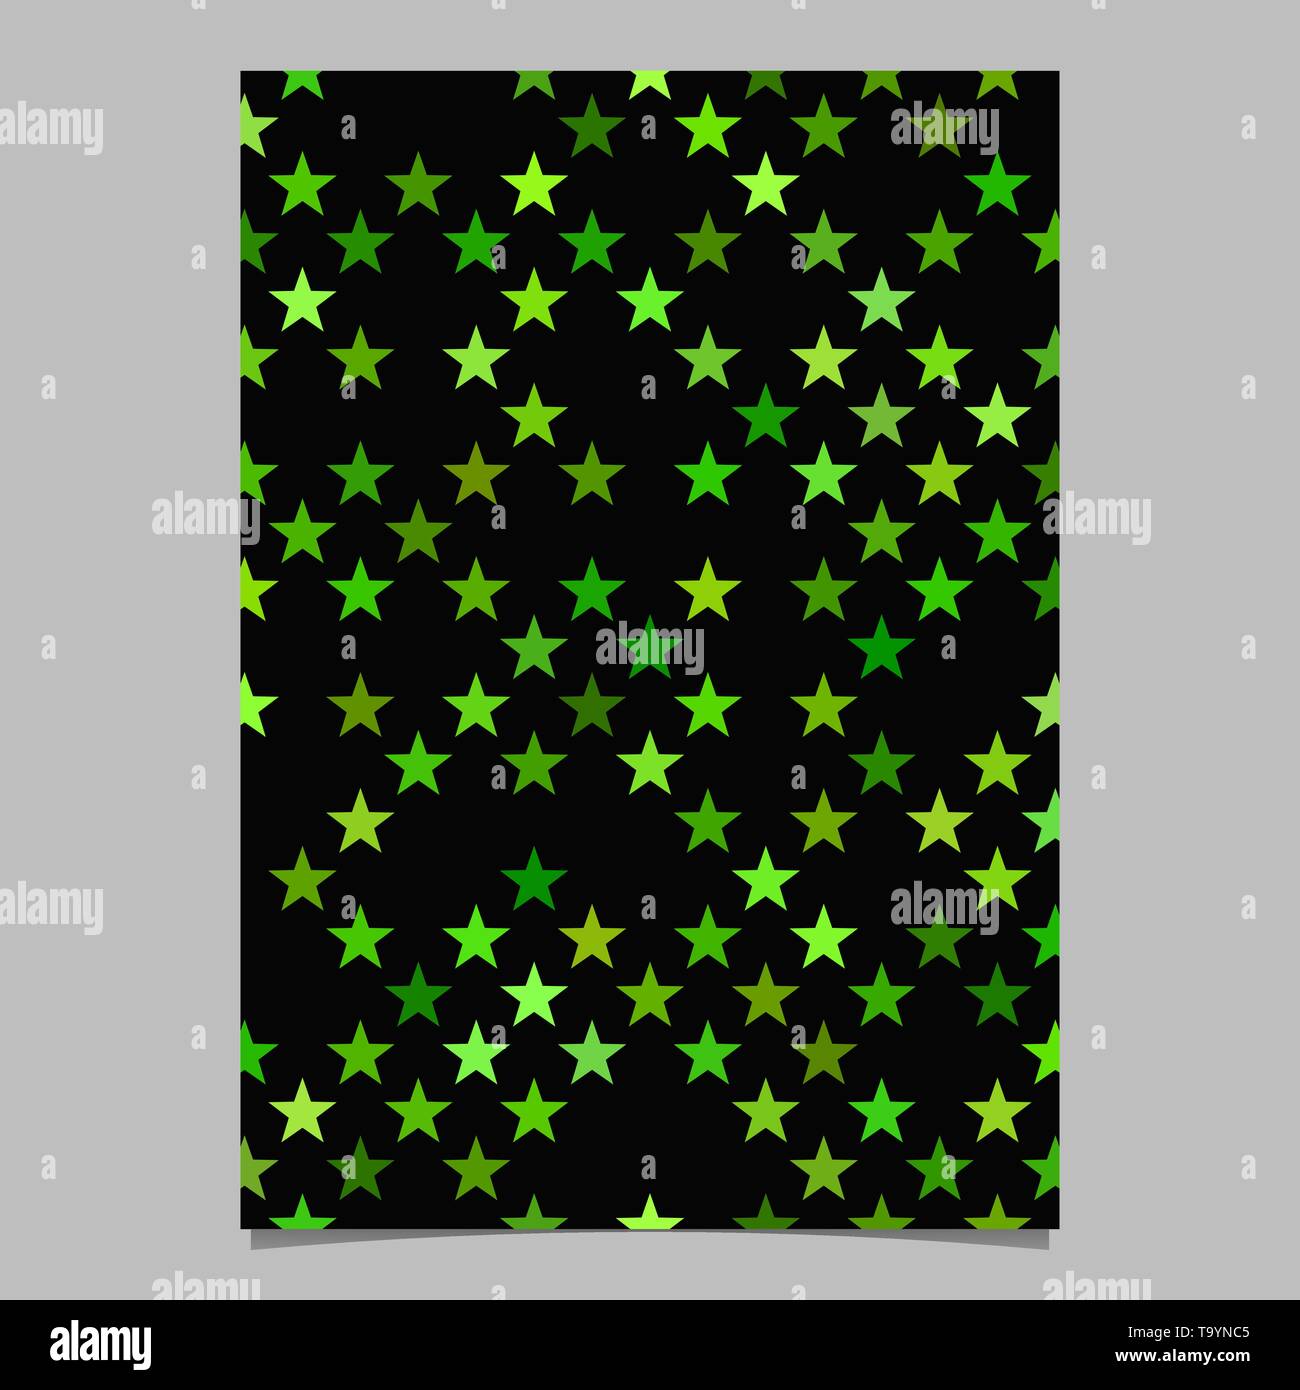 Green star bagroud design on black background Vector Image